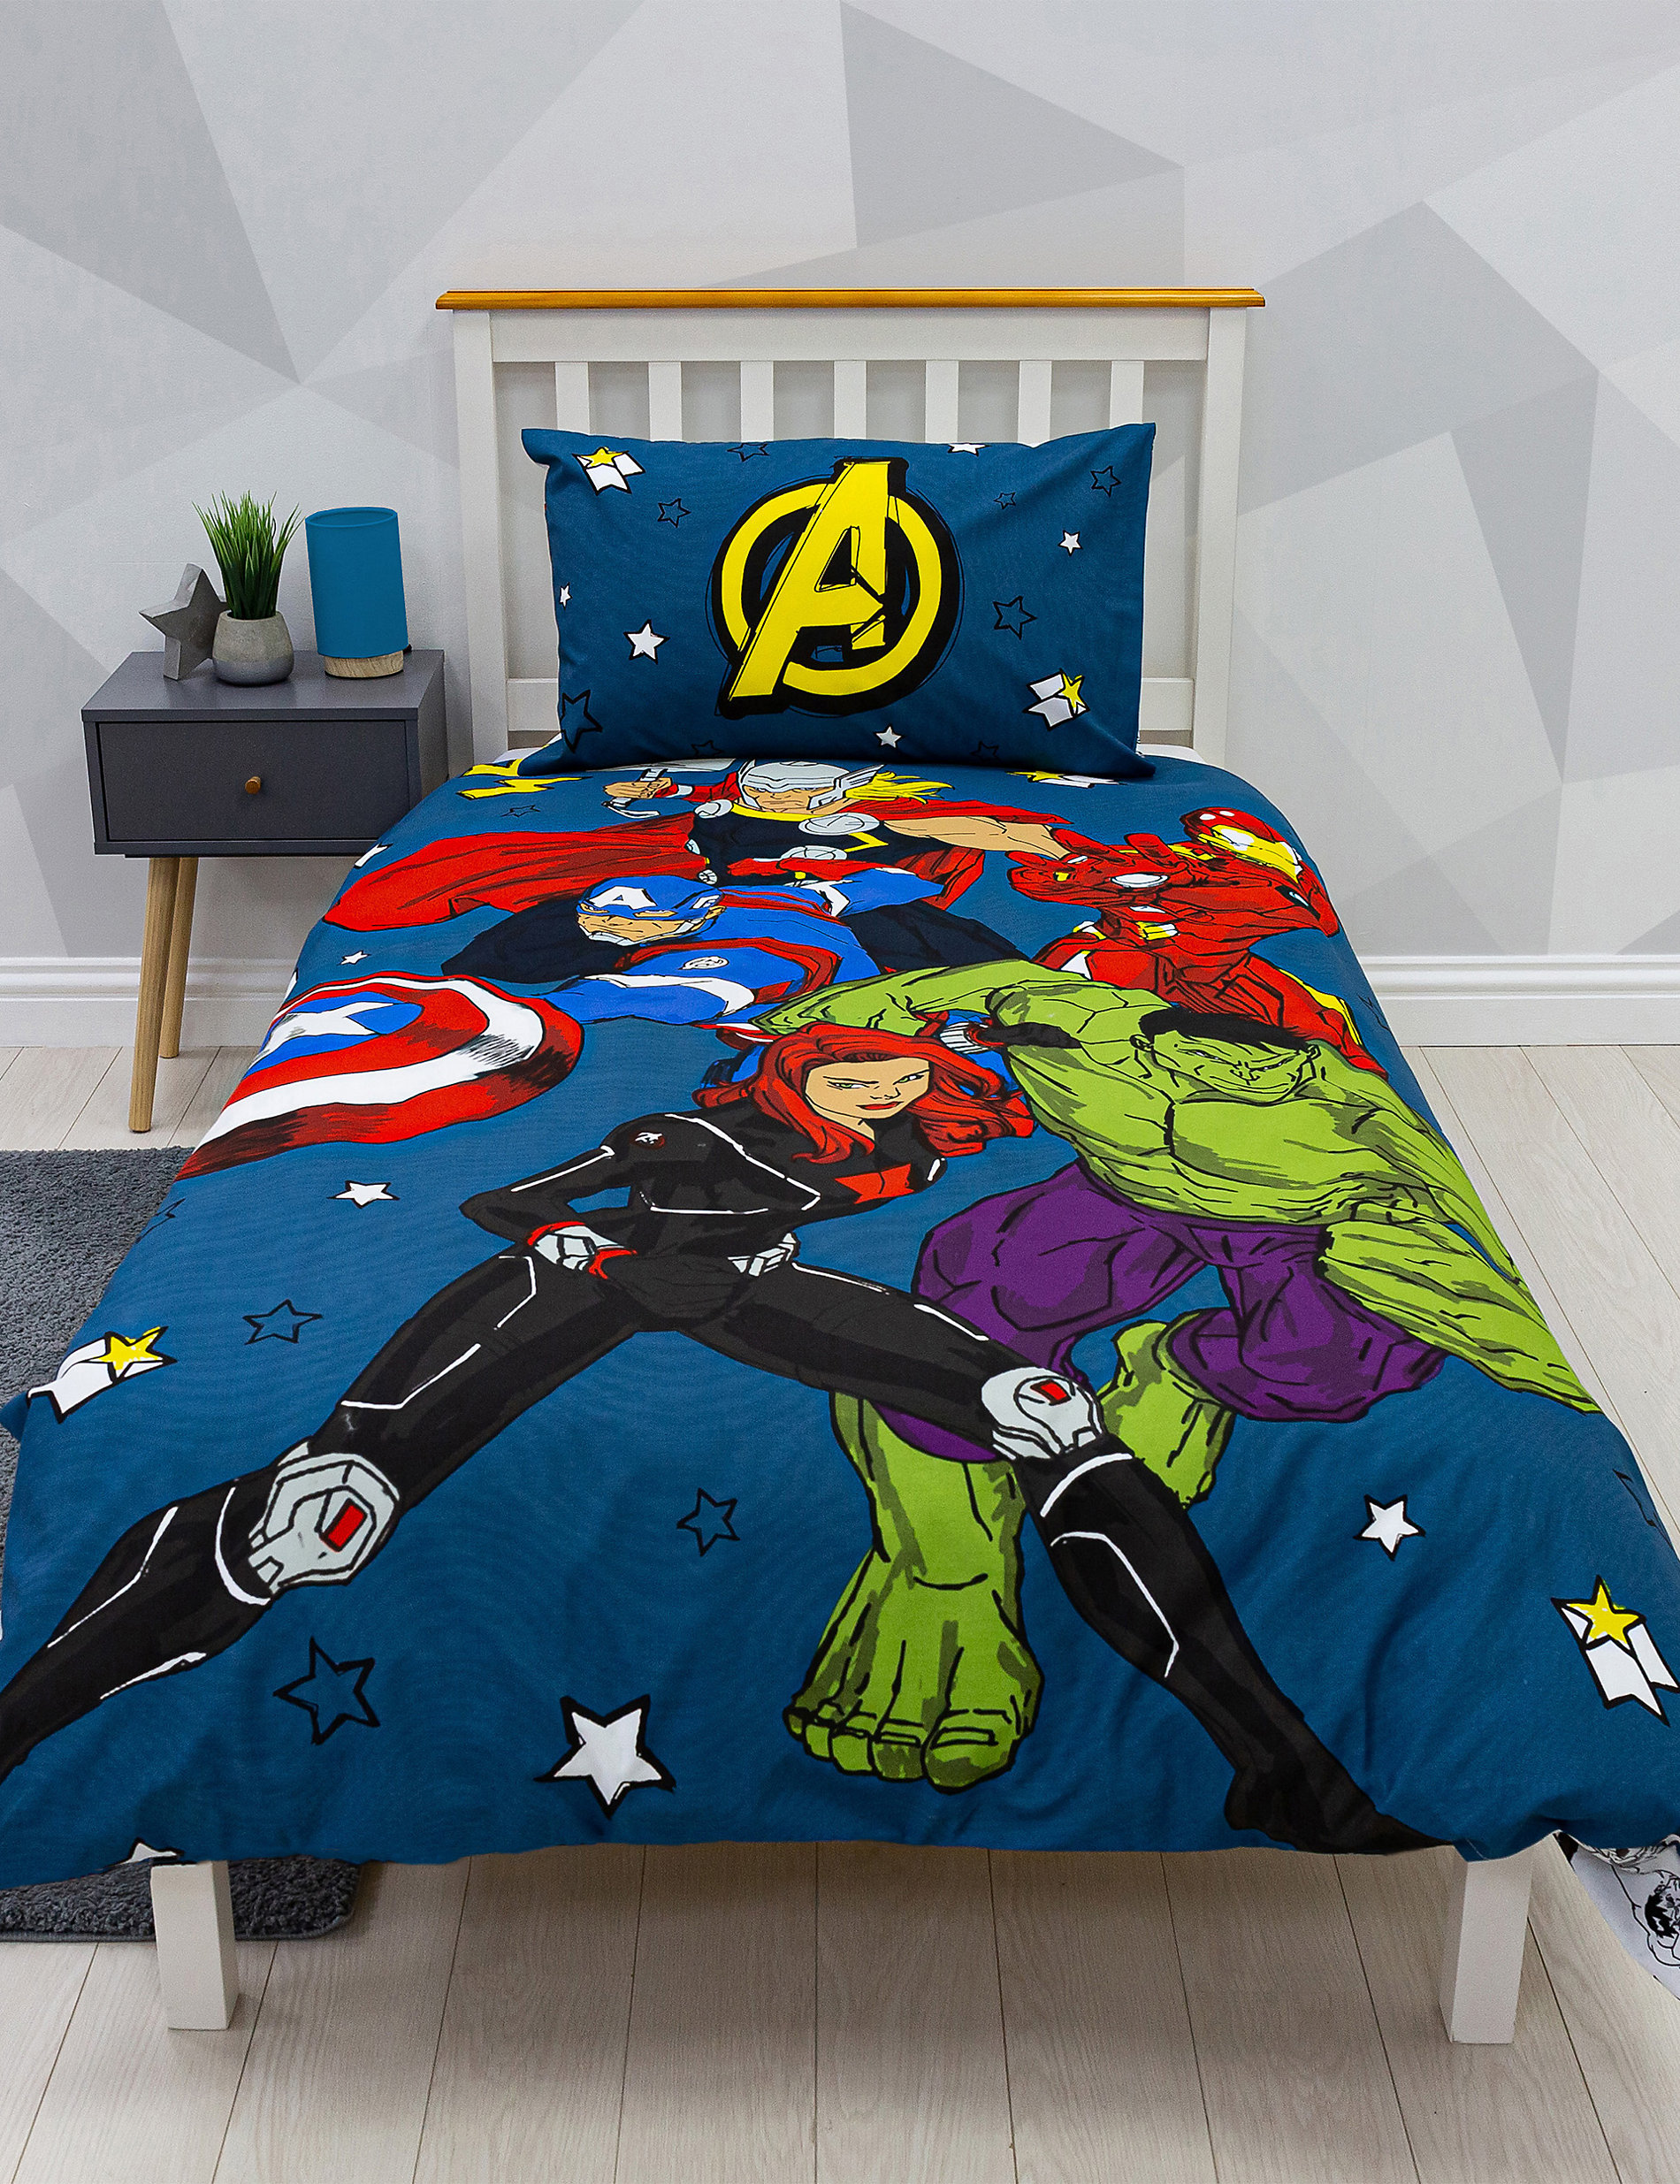 Σετ κλινοσκεπάσματα Avengers™ για μονό κρεβάτι από σύμμεικτο βαμβάκι